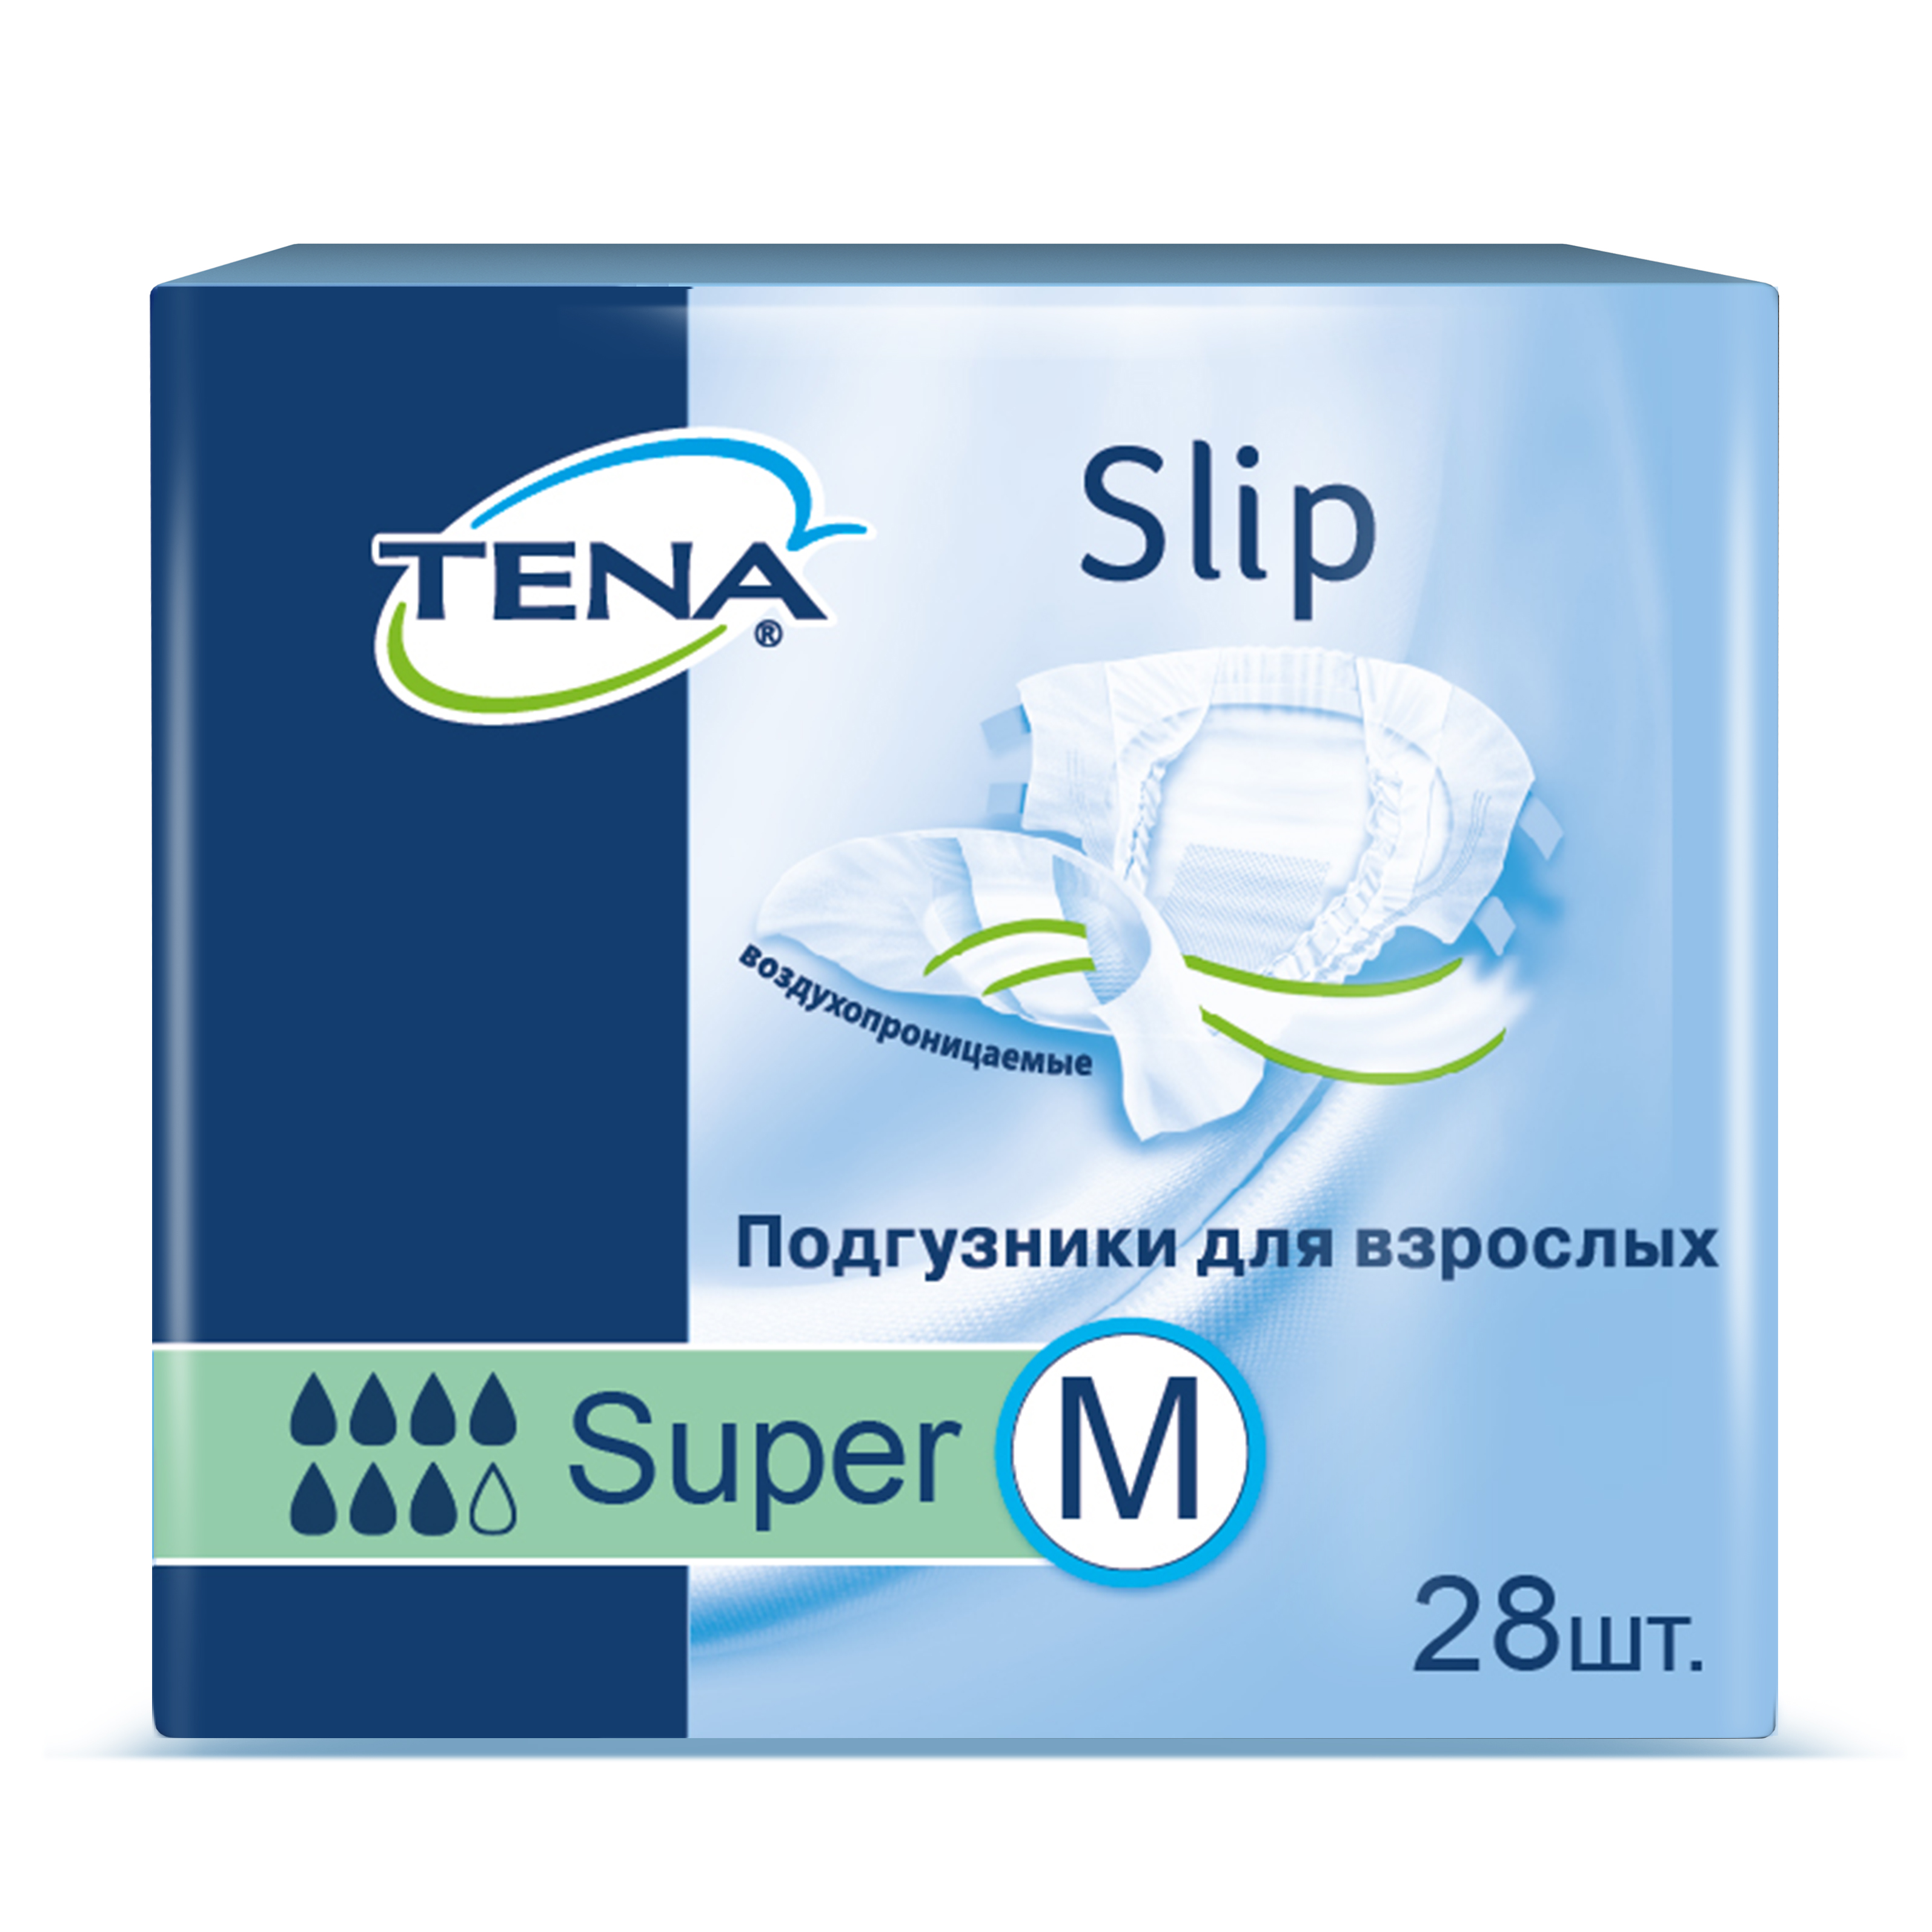 Купить Подгузники для взрослых Tena Slip Super M дышащие 28 шт.